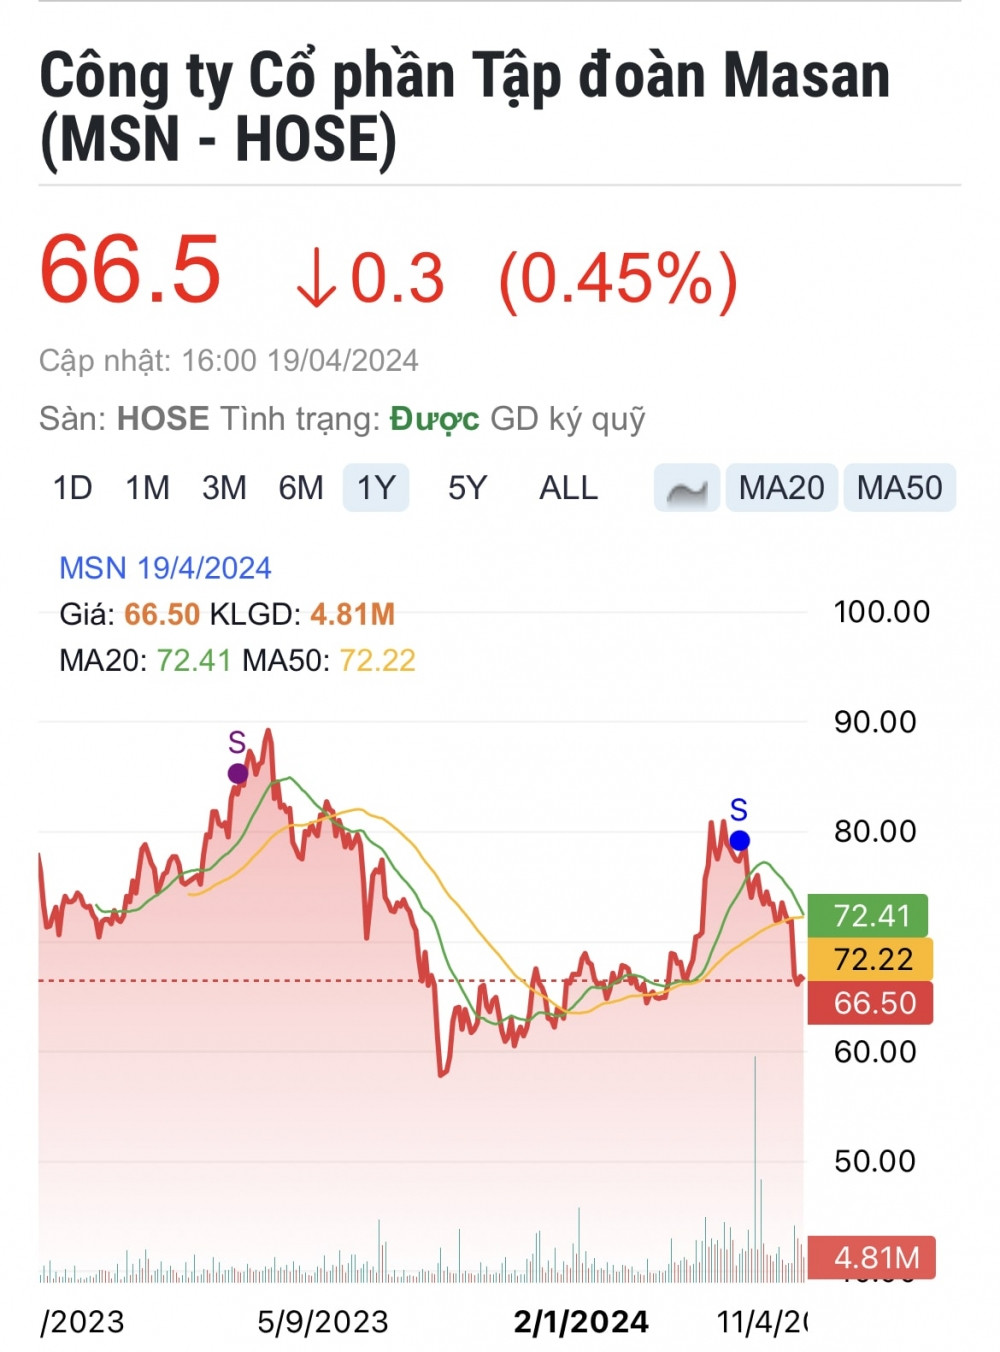 HSBC định giá cổ phiếu Masan (MSN) cao hơn 47% so với mức hiện tại